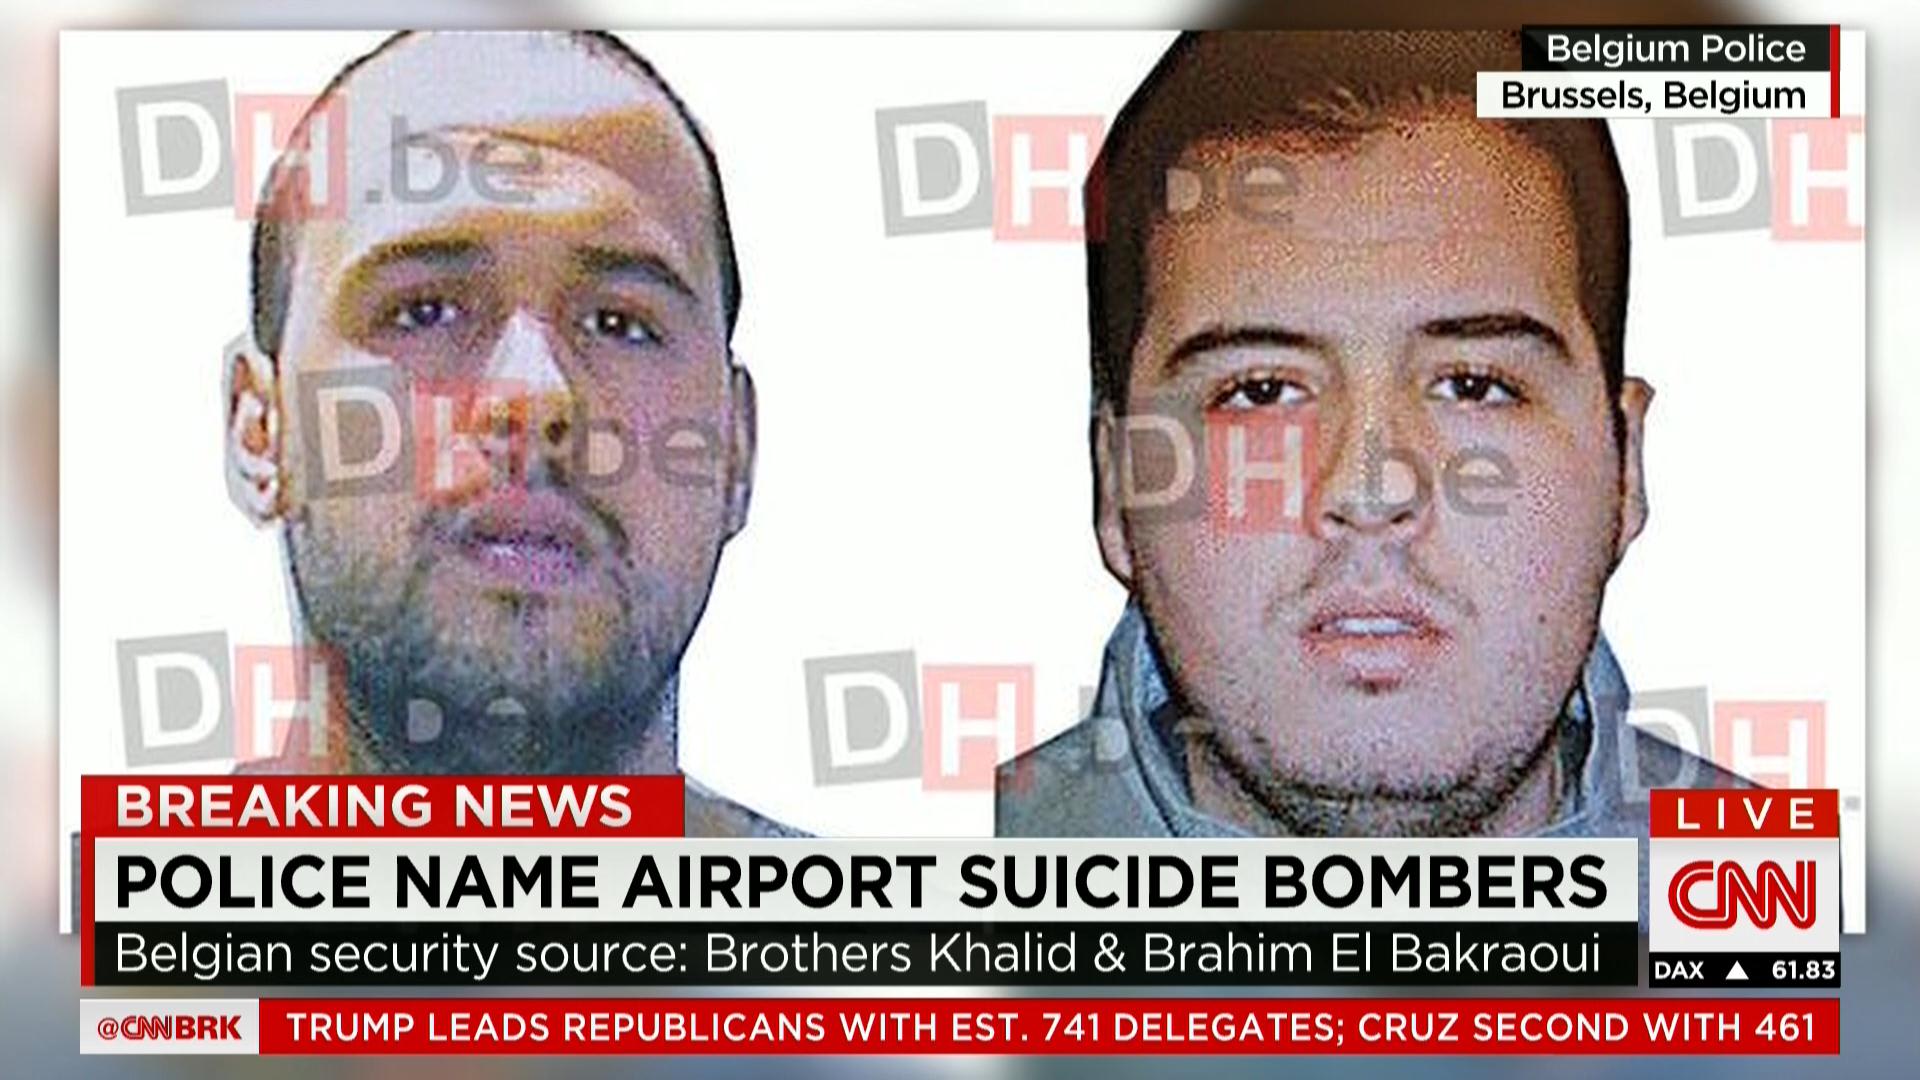 مصادر أمنية لـCNN: الاشتباه بصلة منفذي تفجيري مطار بروكسل الشقيقان إبراهيم وخالد بكراوي بهجمات باريس